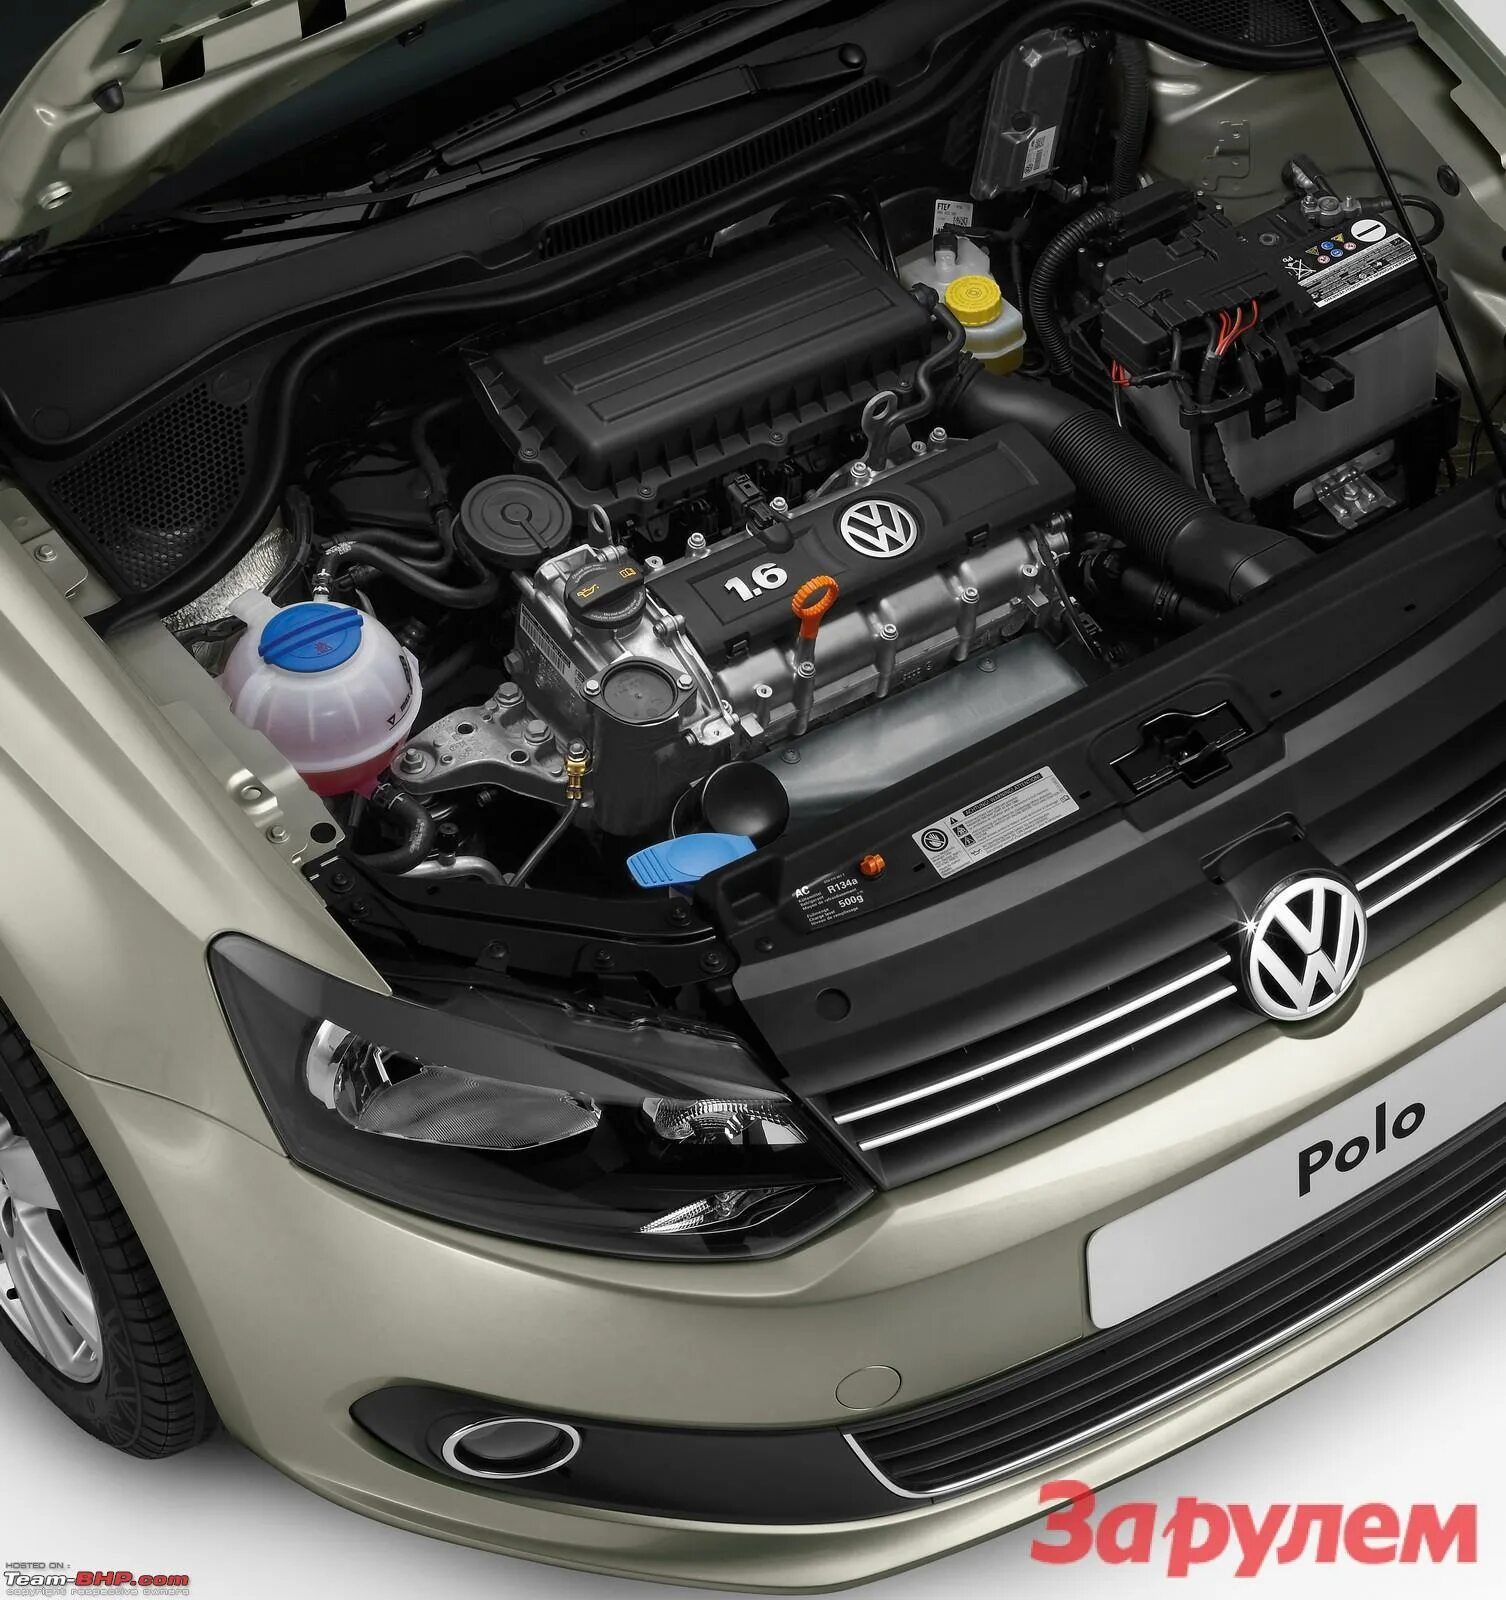 Ремонт двигателя поло. Двигатель Volkswagen Polo sedan 1.6. Volkswagen Polo 2017 двигатель. Движок Volkswagen Polo 1.6 105. Двигатель Фольксваген поло седан 1.6.